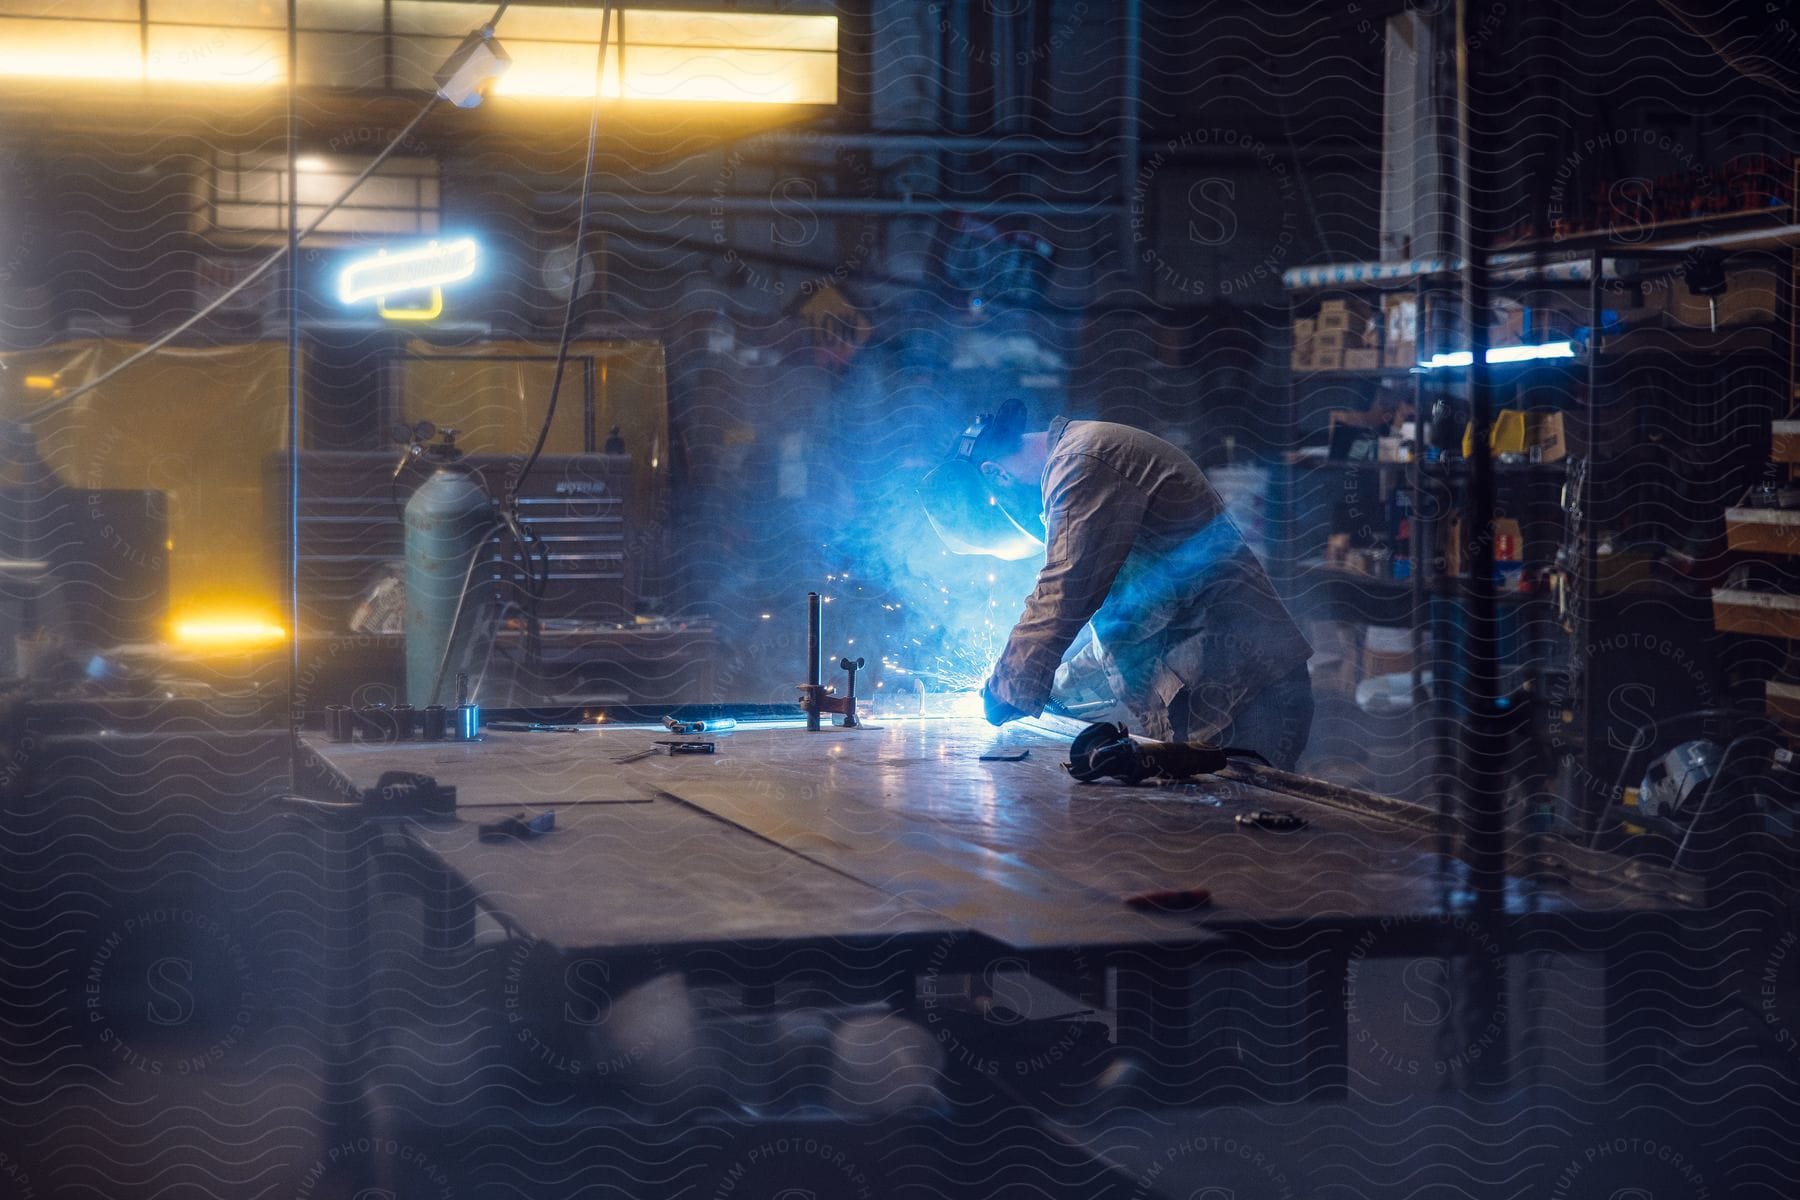 A welder in a machine shop lit by neon lights.